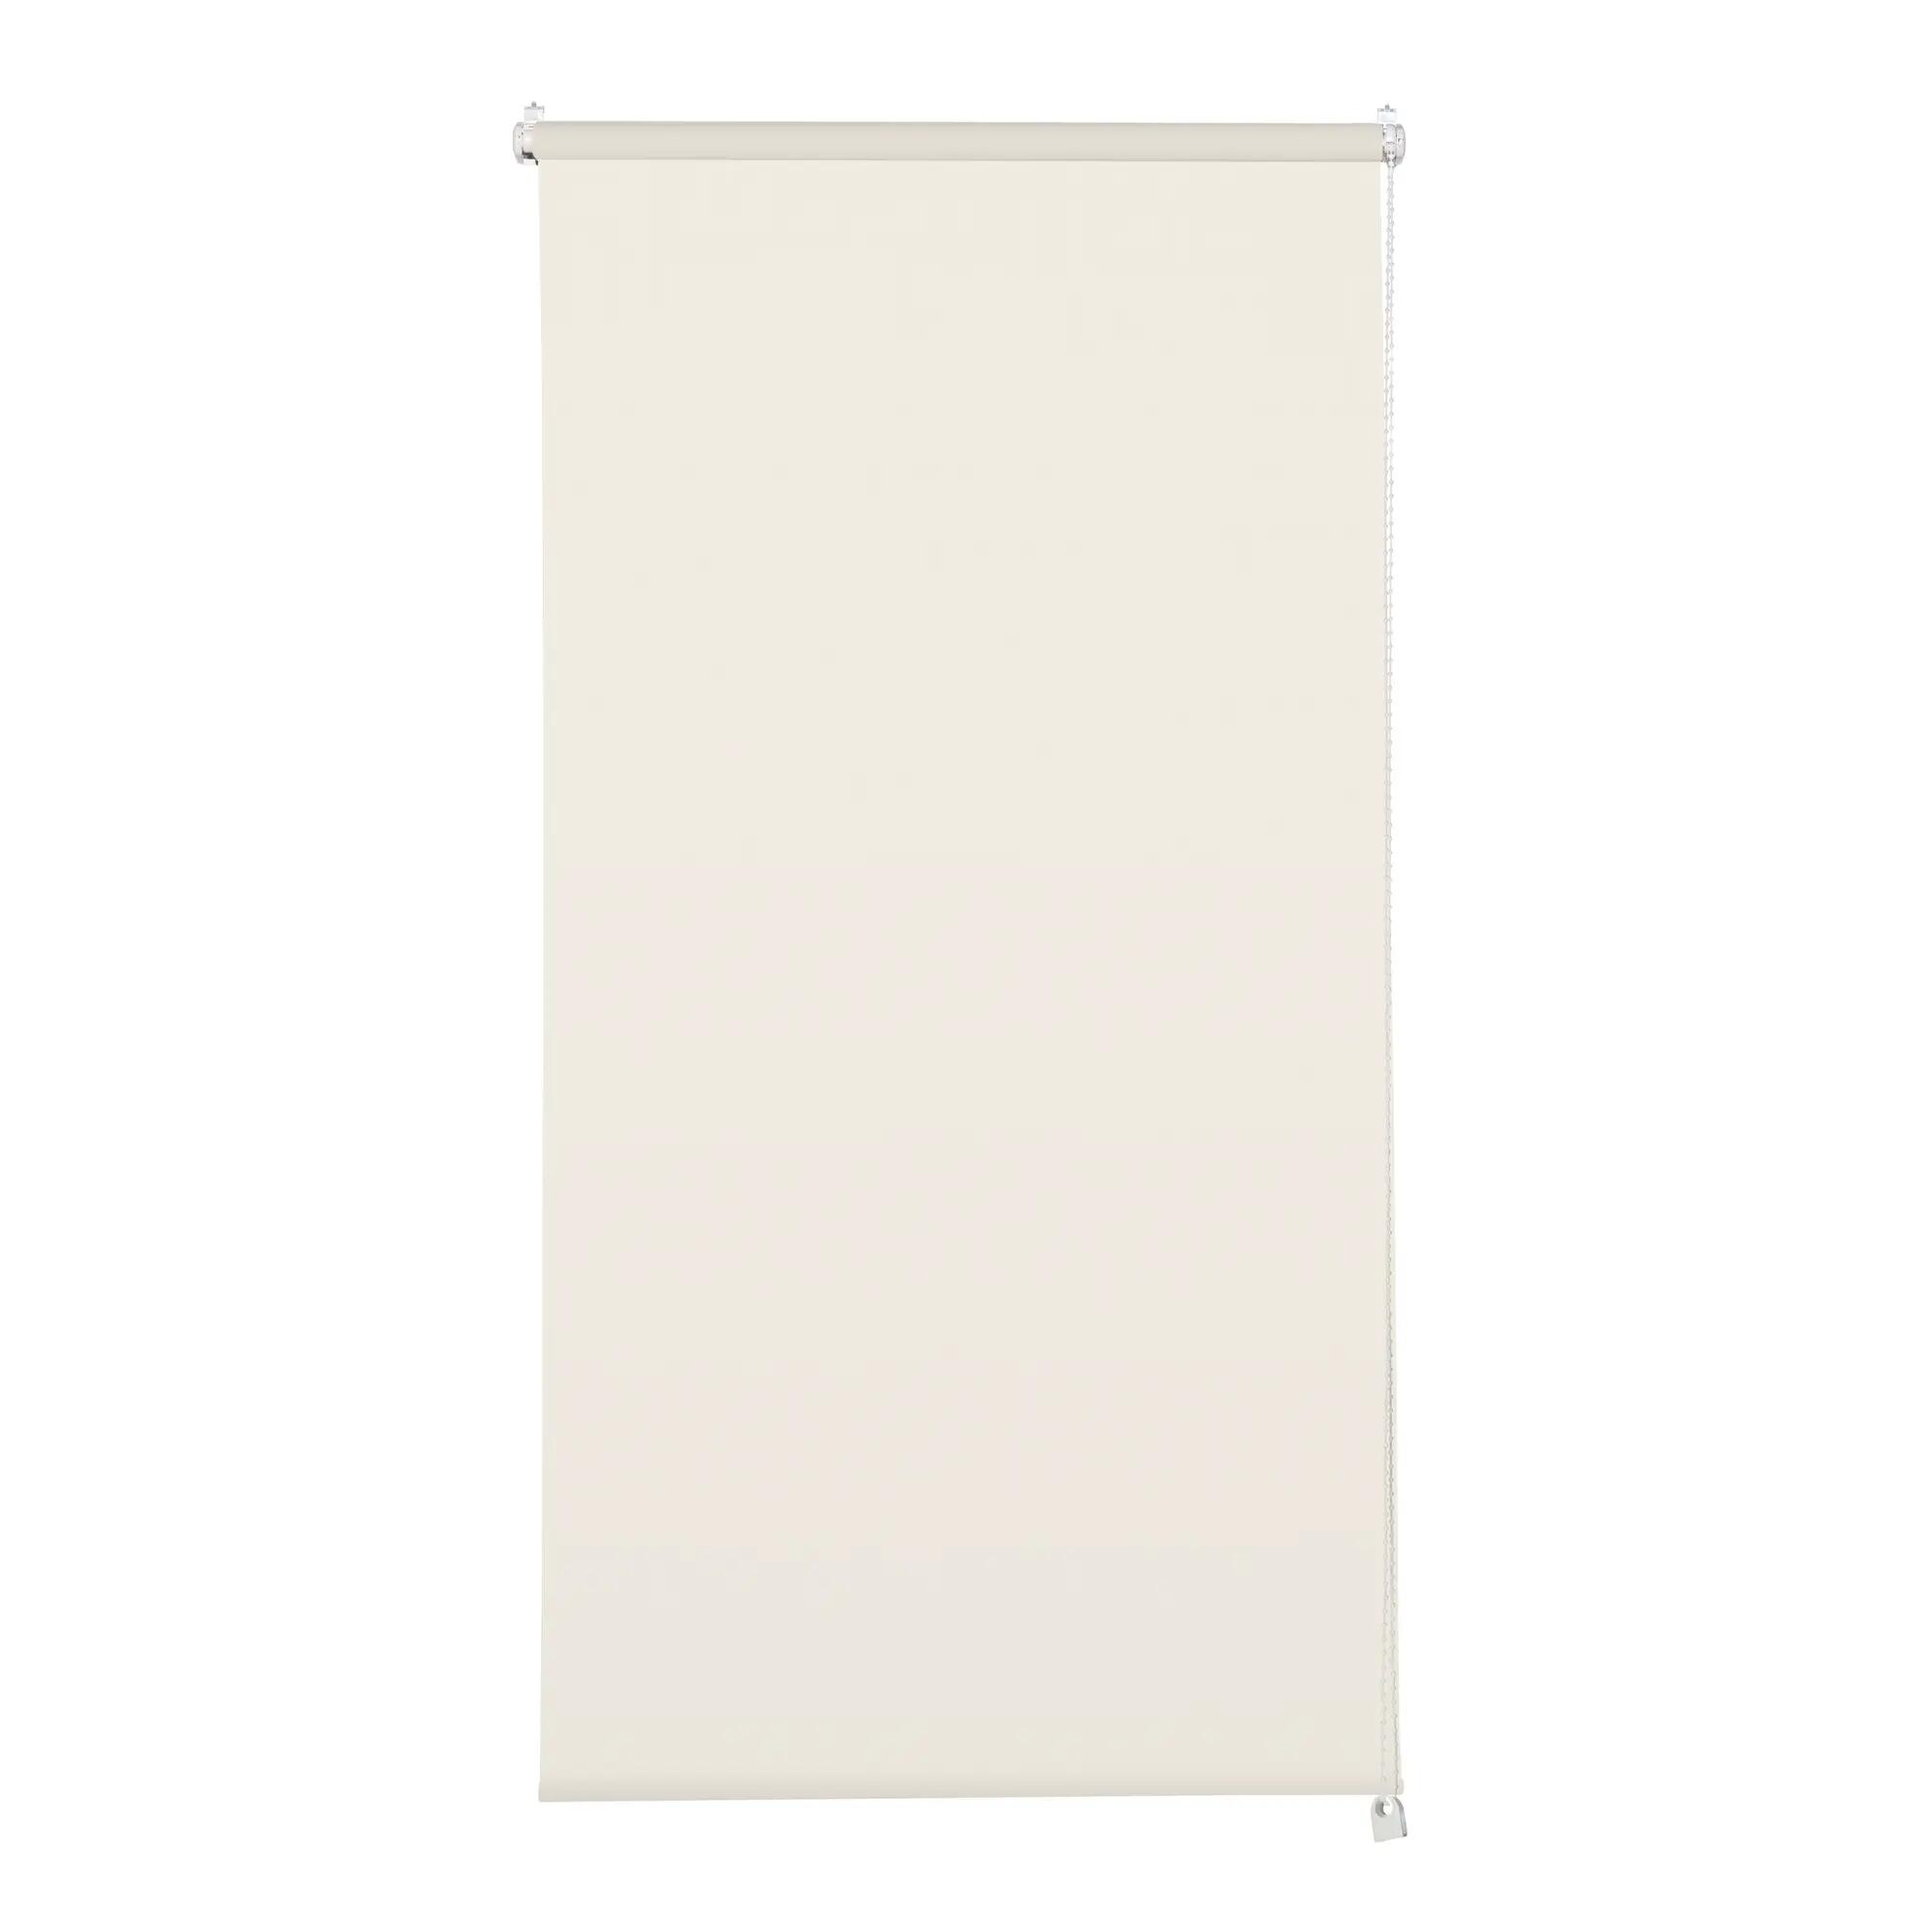 Tenda a rullo filtrante INSPIRE Screen lino 135 x 250 cm - 1